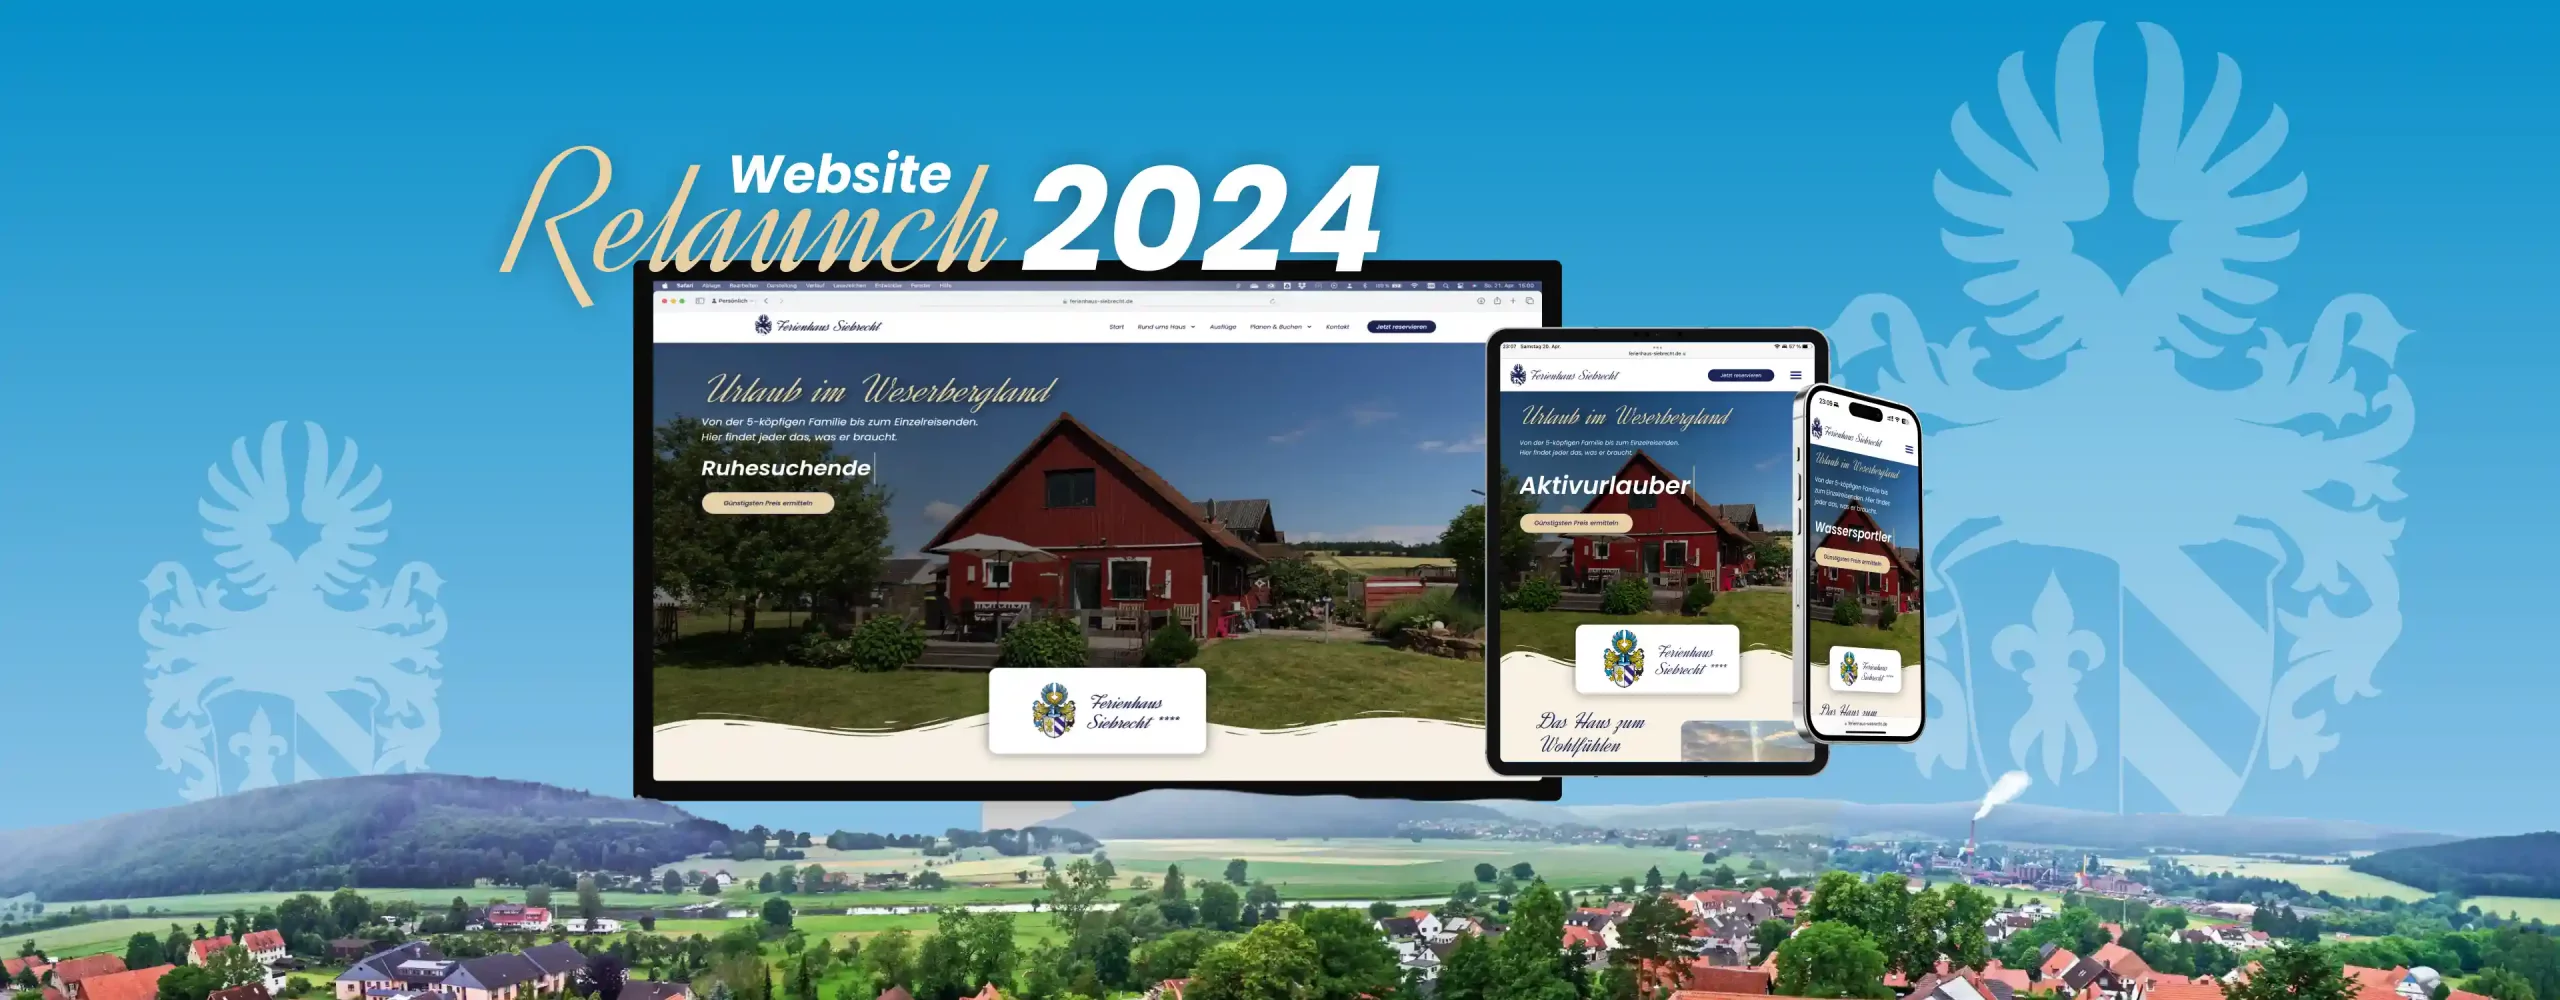 Ferienhaus Siebrecht Website Relaunch 2024